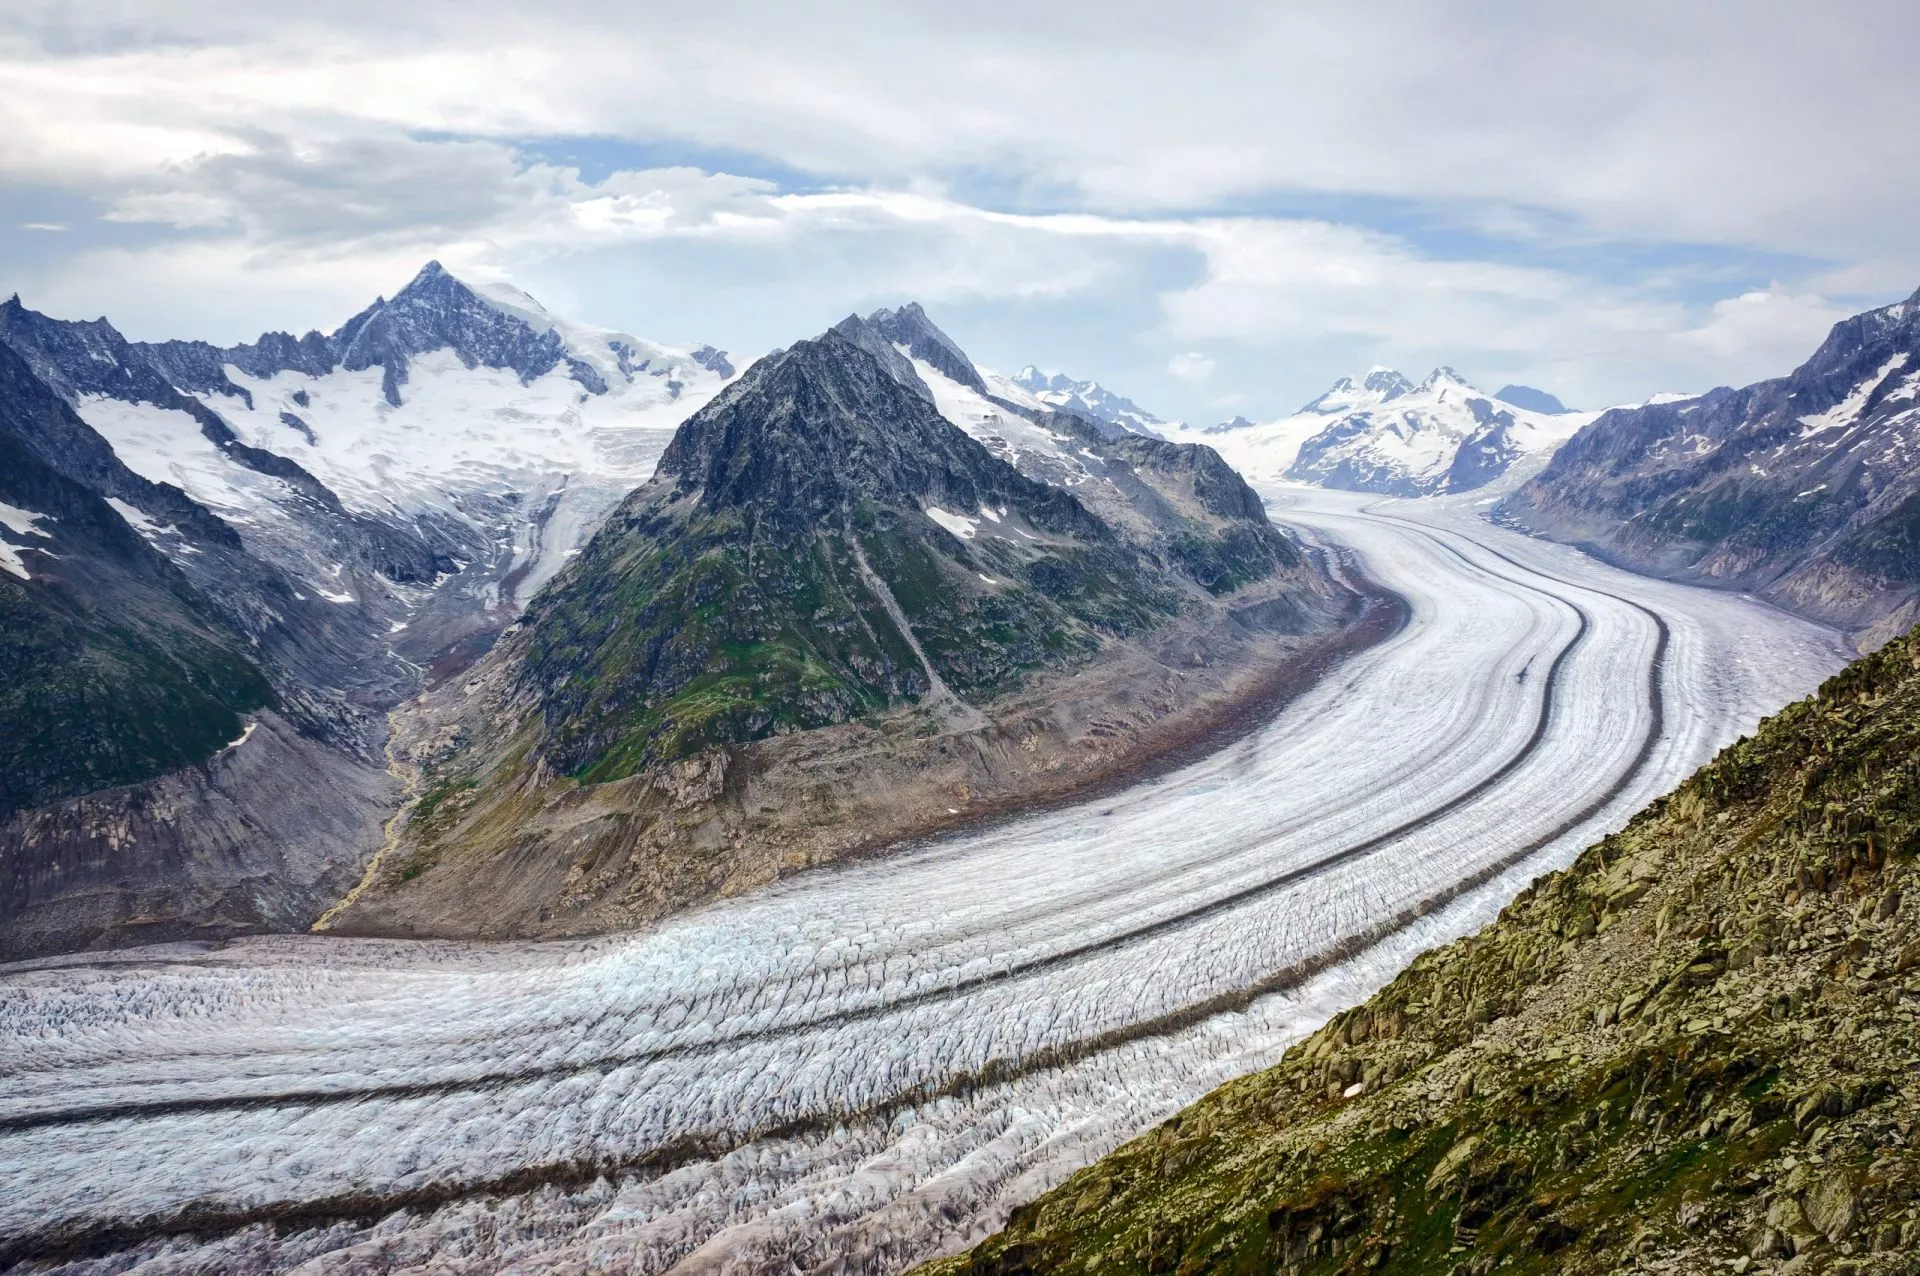 de grootste gletsjer in europa is de aletschgletsjer